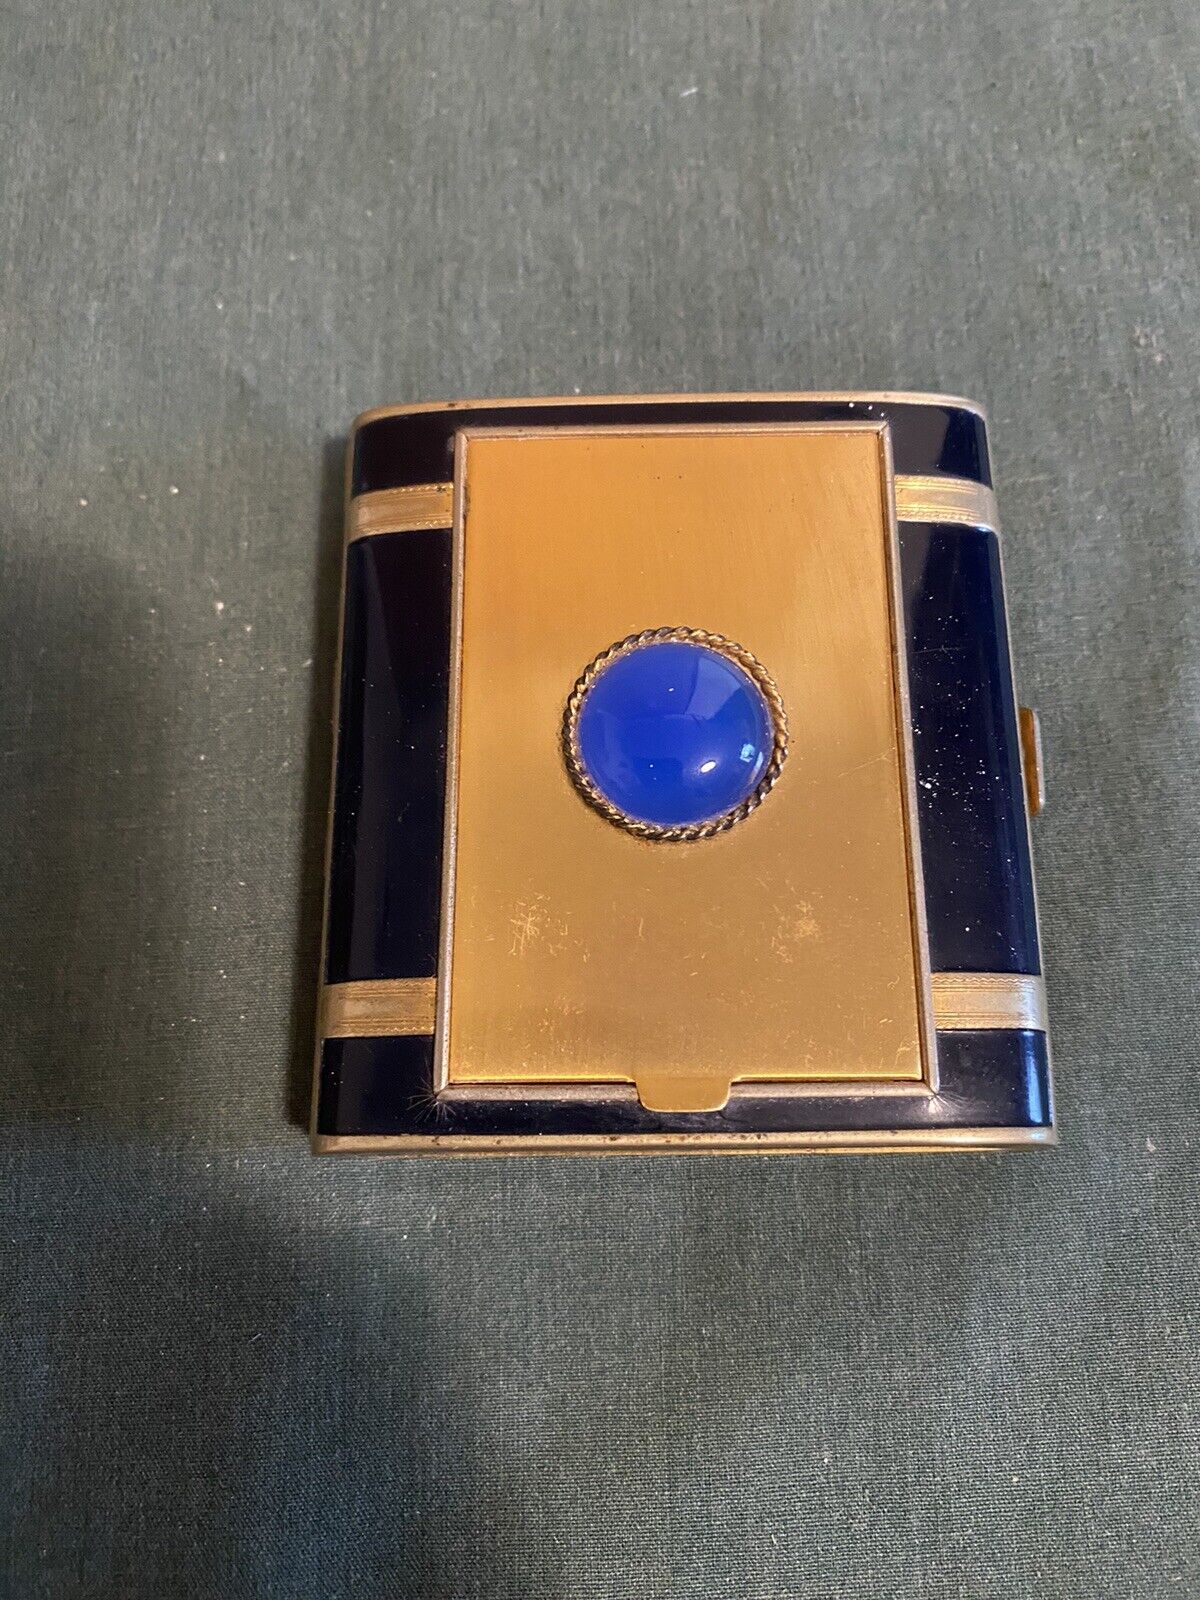 Vintage Art Deco Wallet Cigarette Case Compact